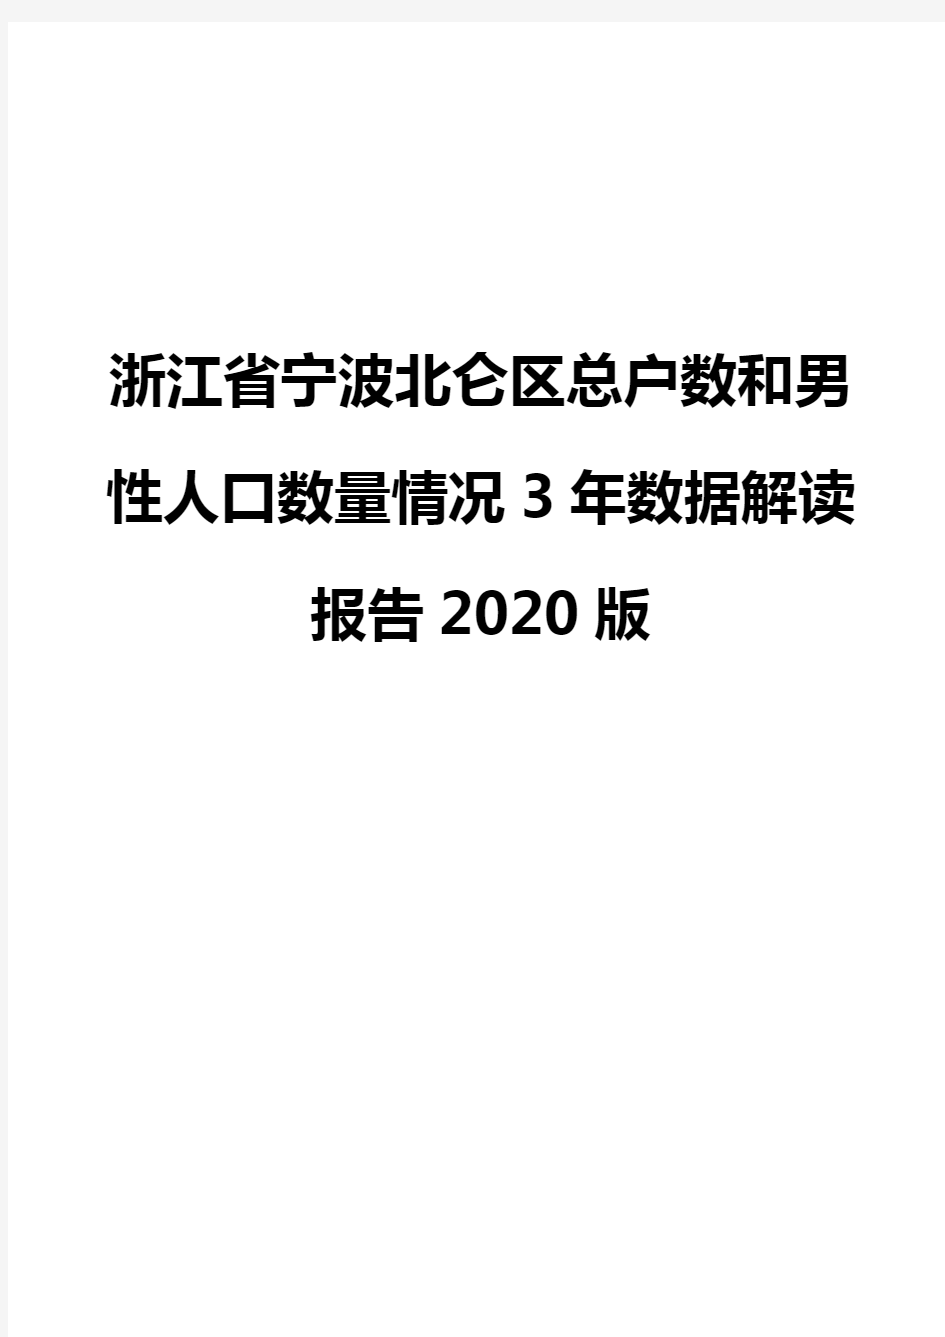 浙江省宁波北仑区总户数和男性人口数量情况3年数据解读报告2020版